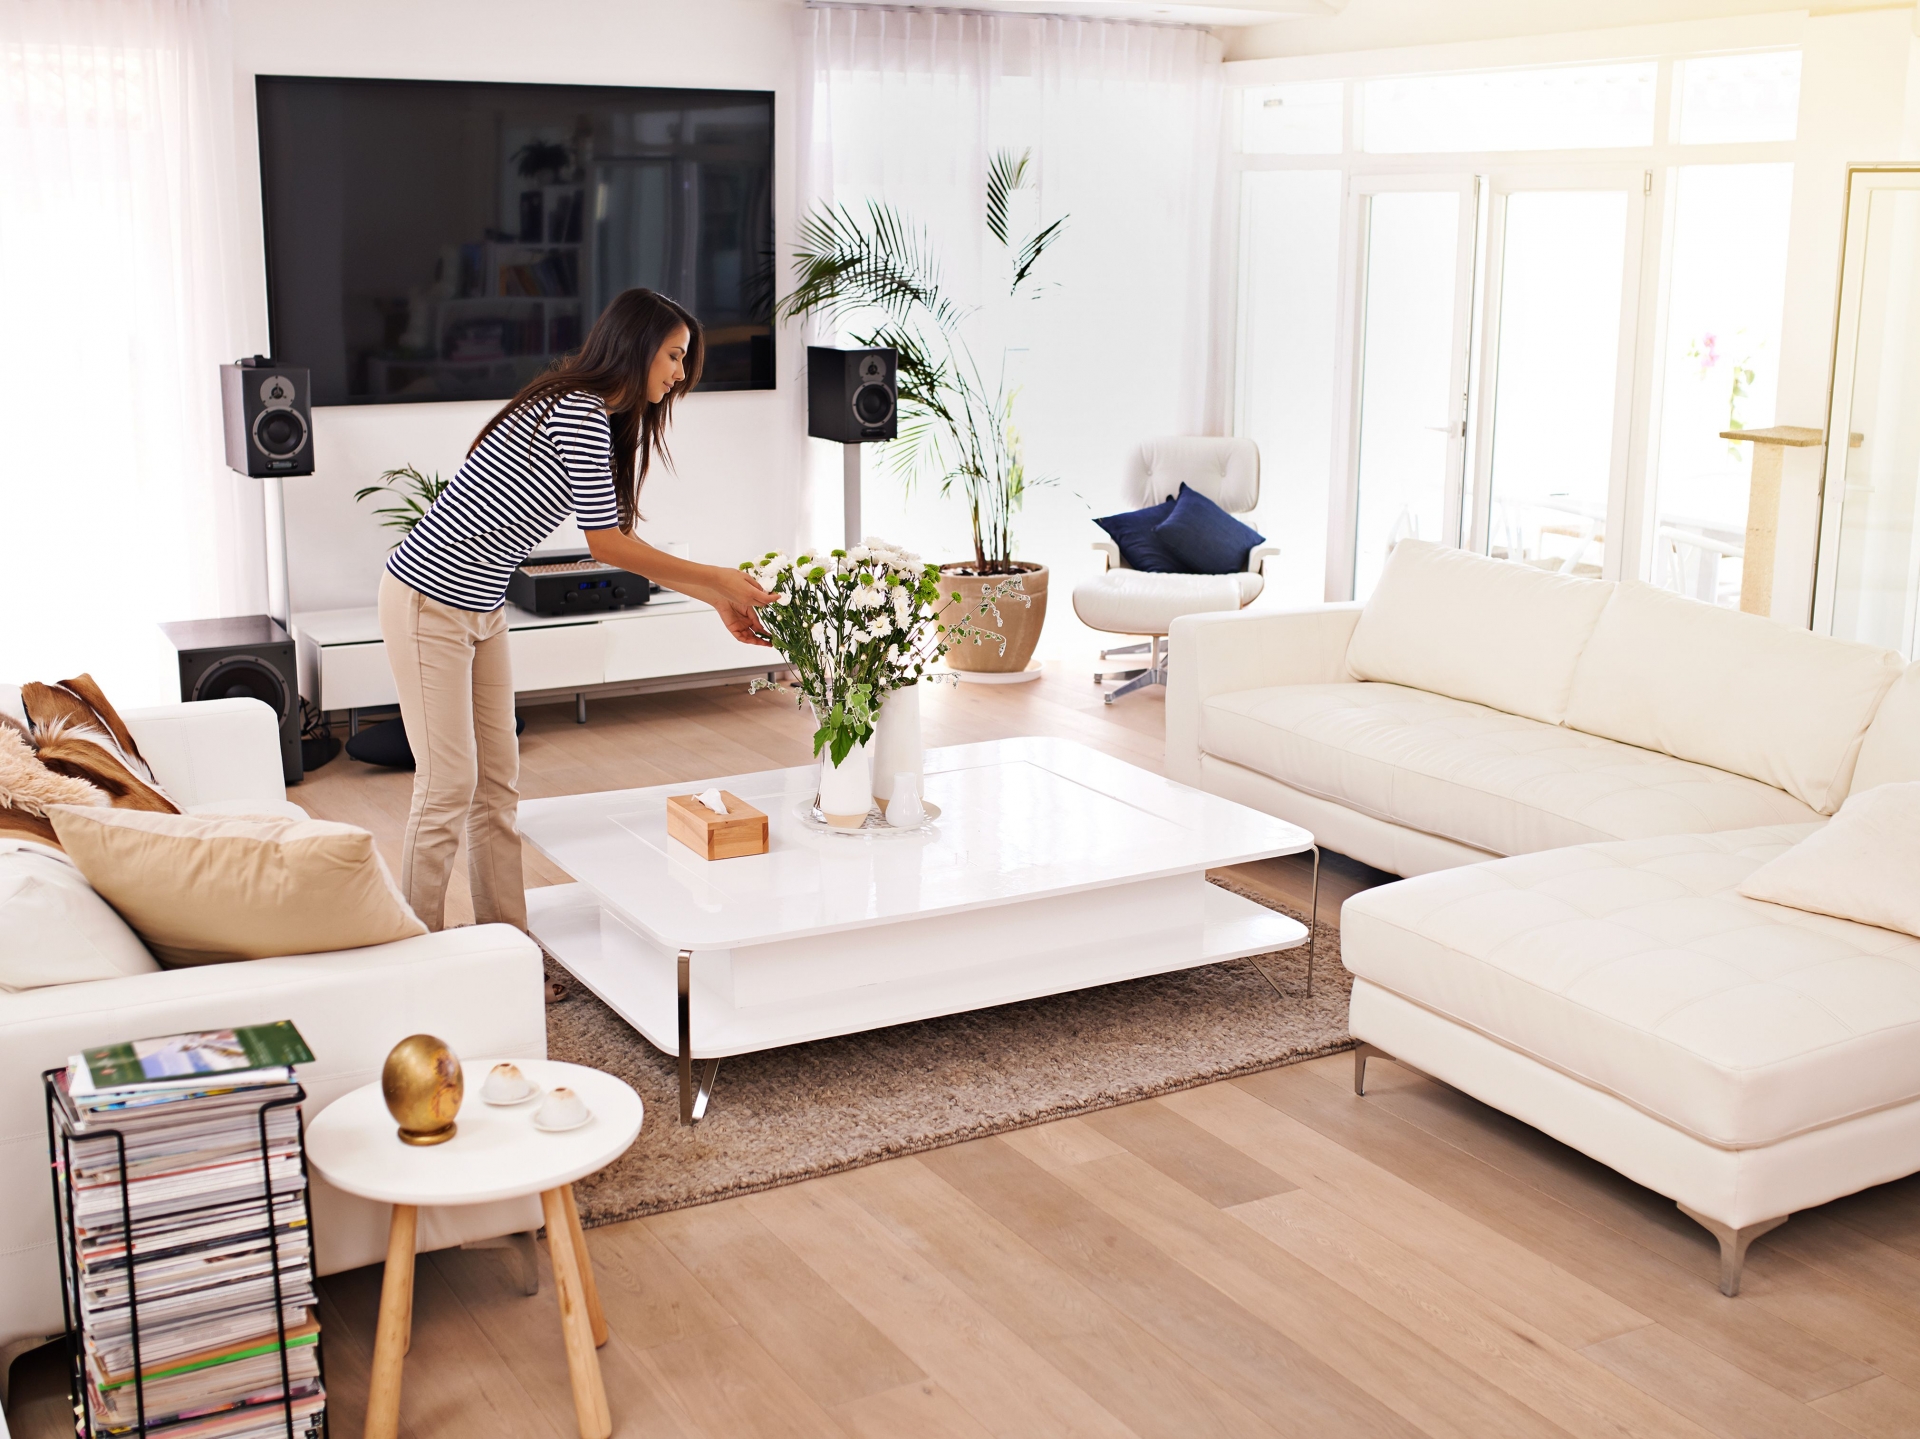 Vệ sinh sofa, ghế bành, bàn nước - những món nội thất quan trọng trong phòng khách.